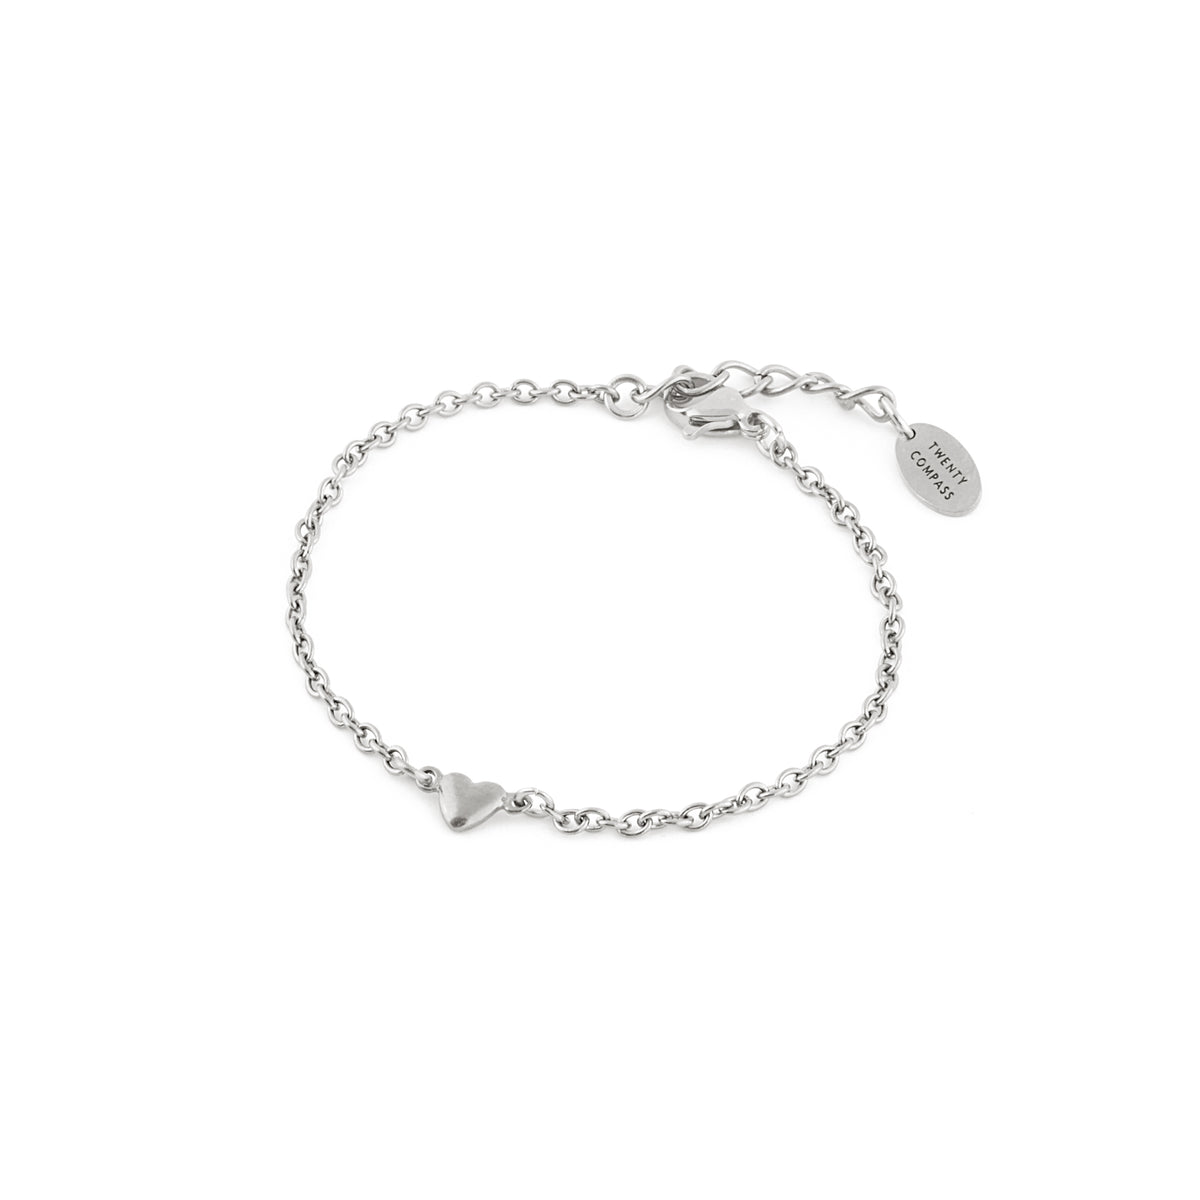 Hopeless Romantic Bracelet - Silver